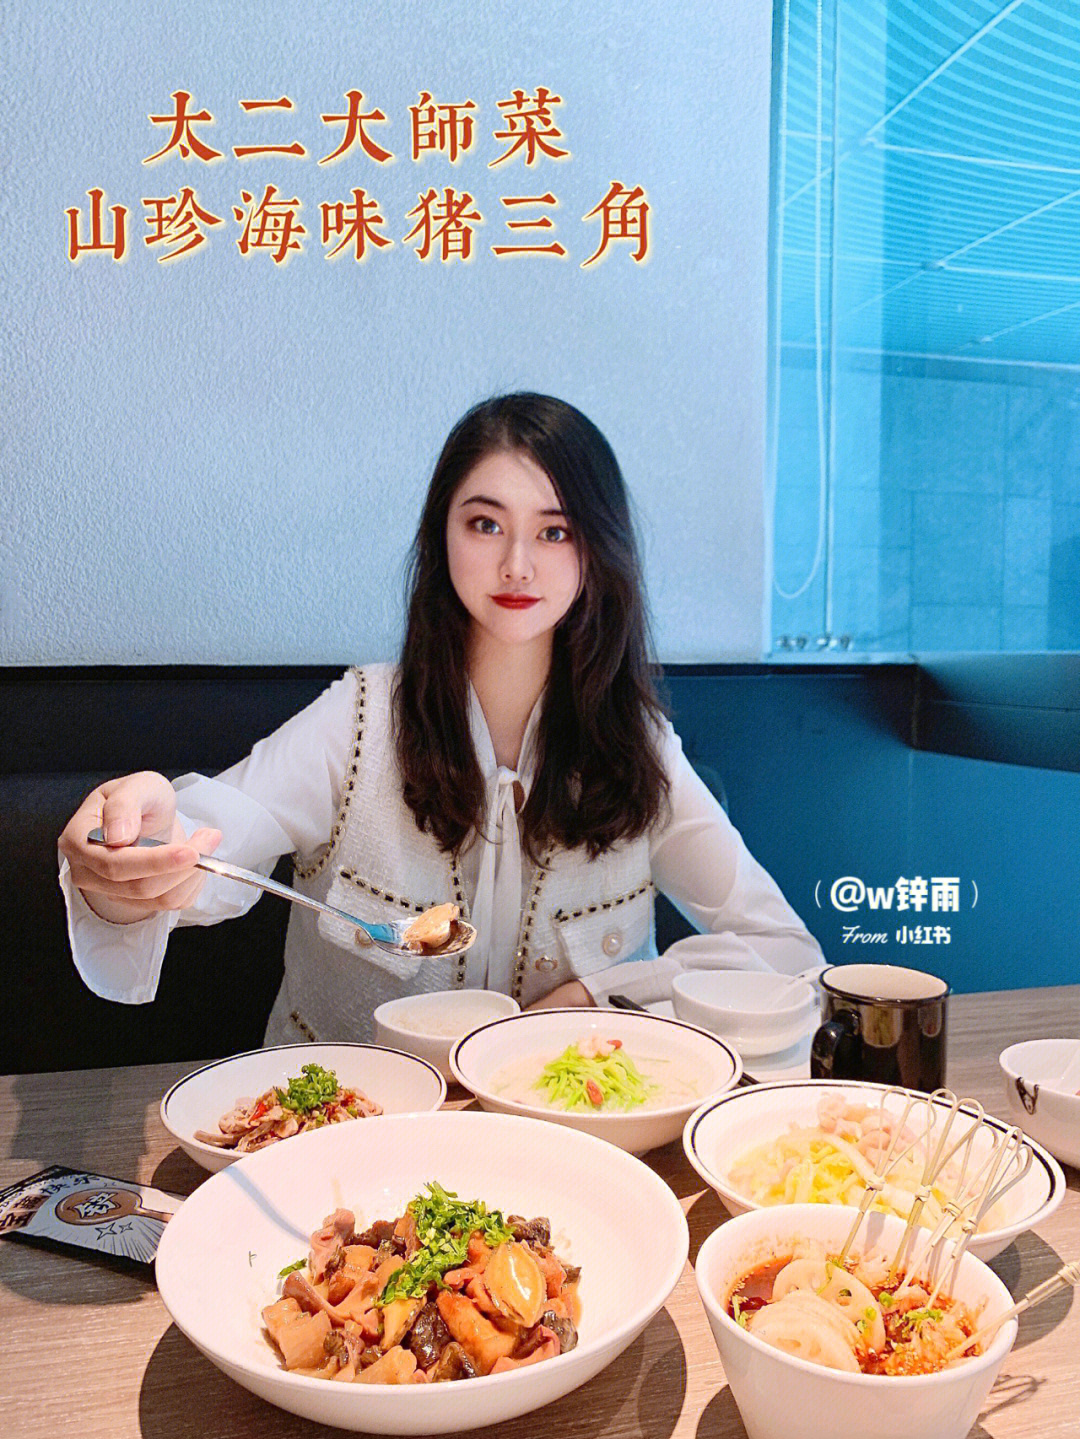 刘强厨师 妻子图片